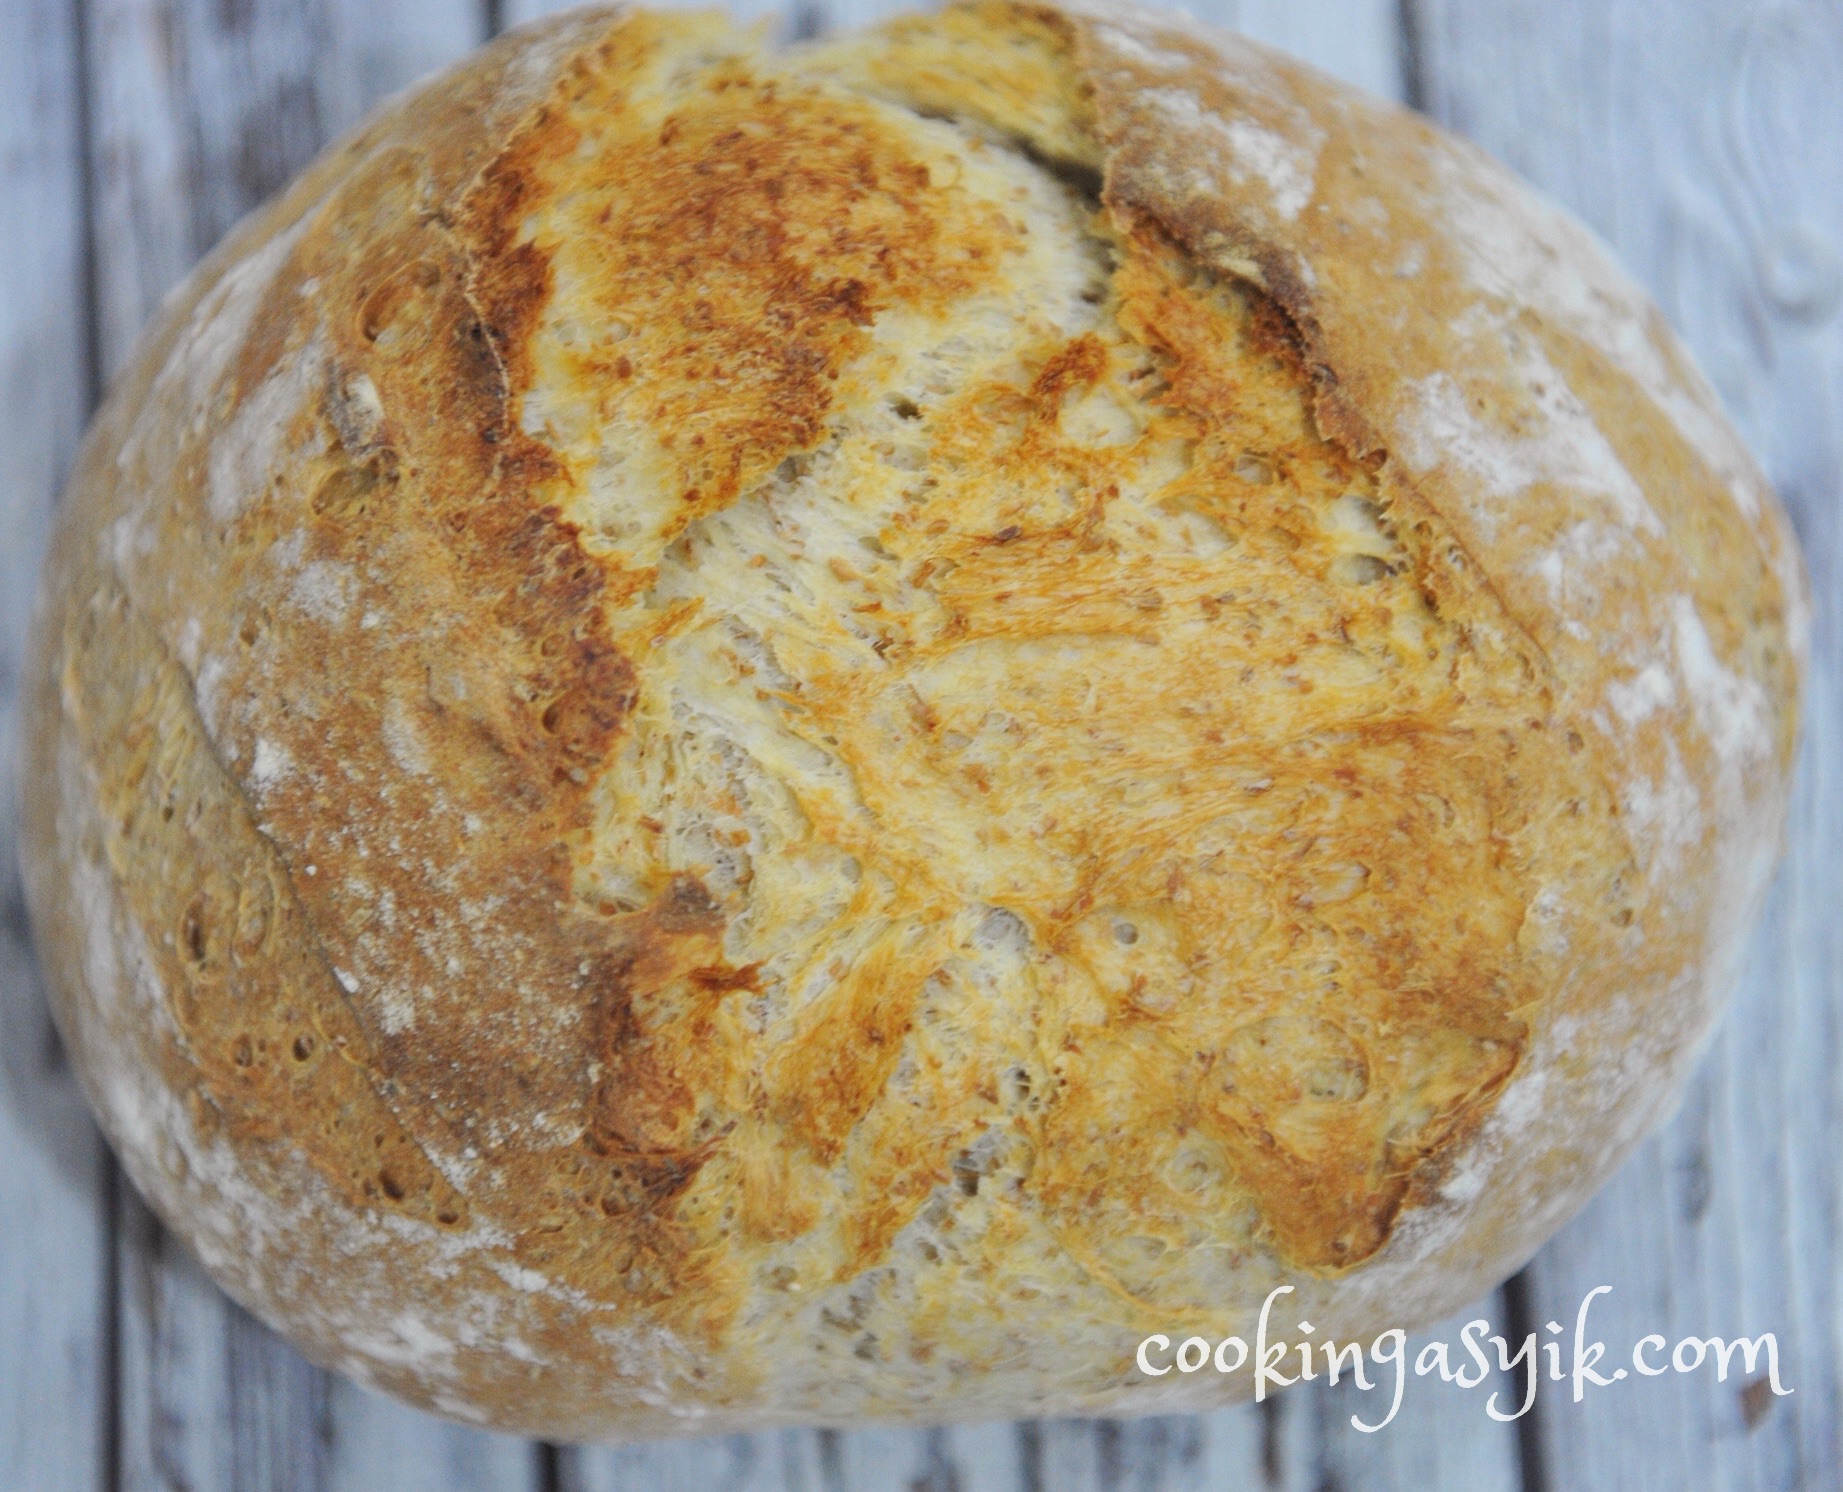 resep roti mudah, roti baguette, roti garlic, garlic bread, roti tanpa telur, roti tanpa susu, roti jadul